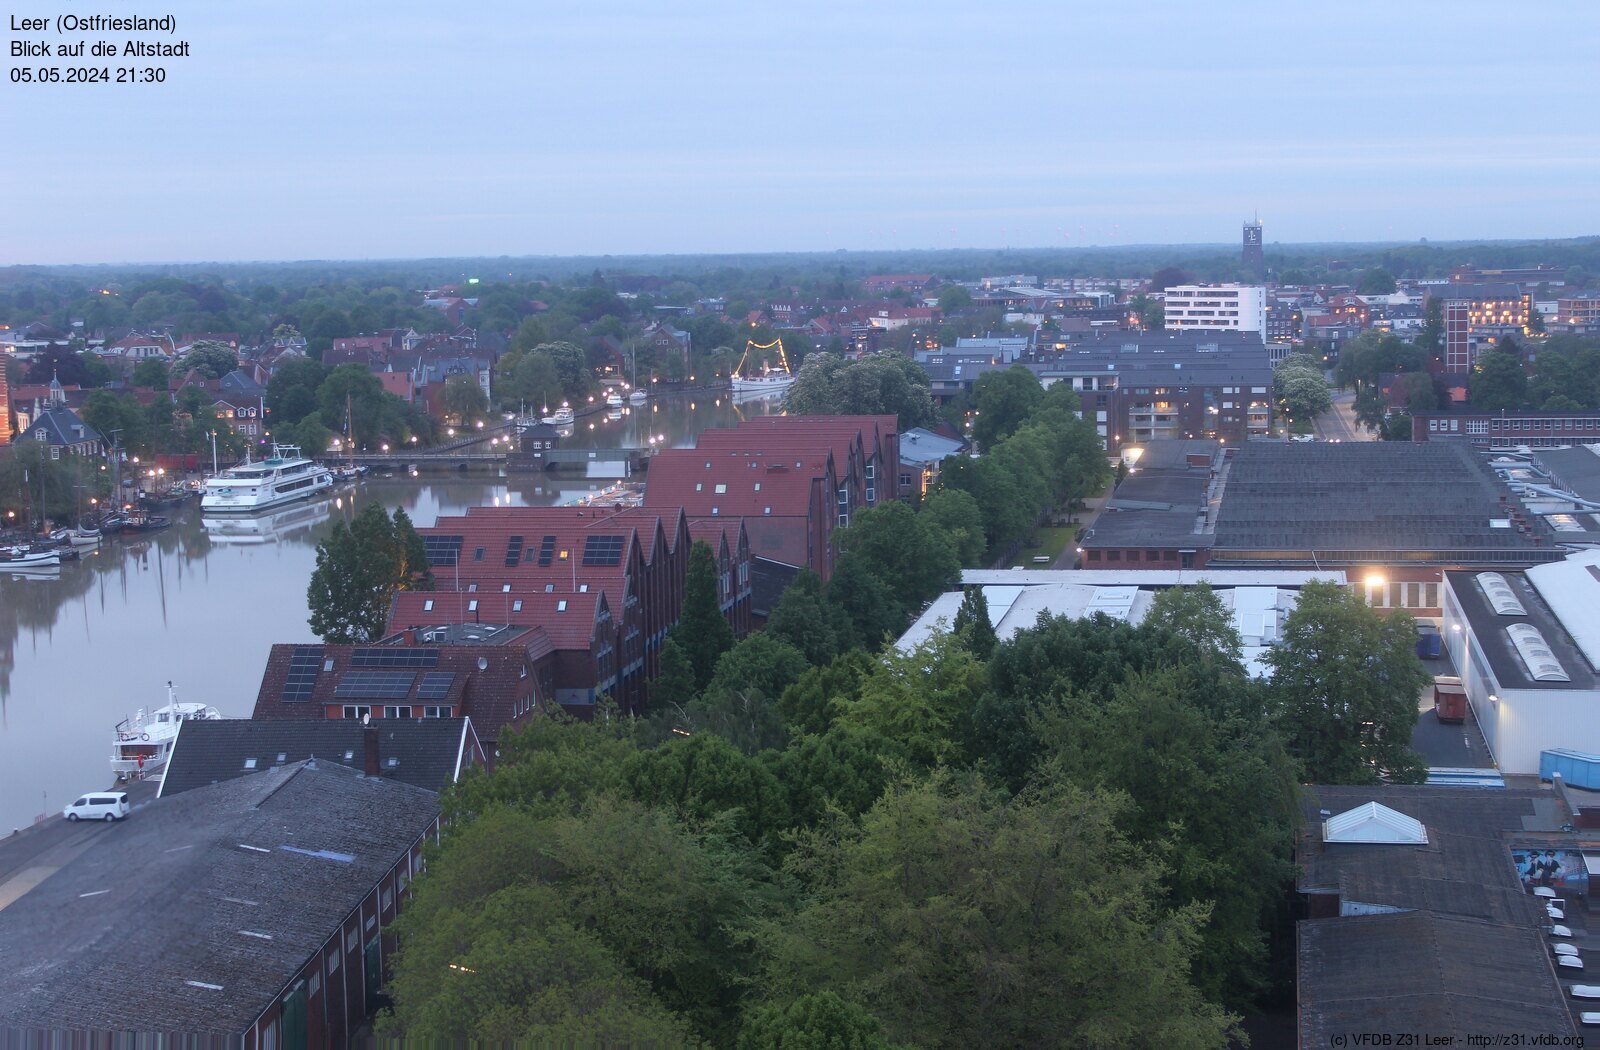 Leer (East Frisia) Skyline and Altstadt (Old Town)